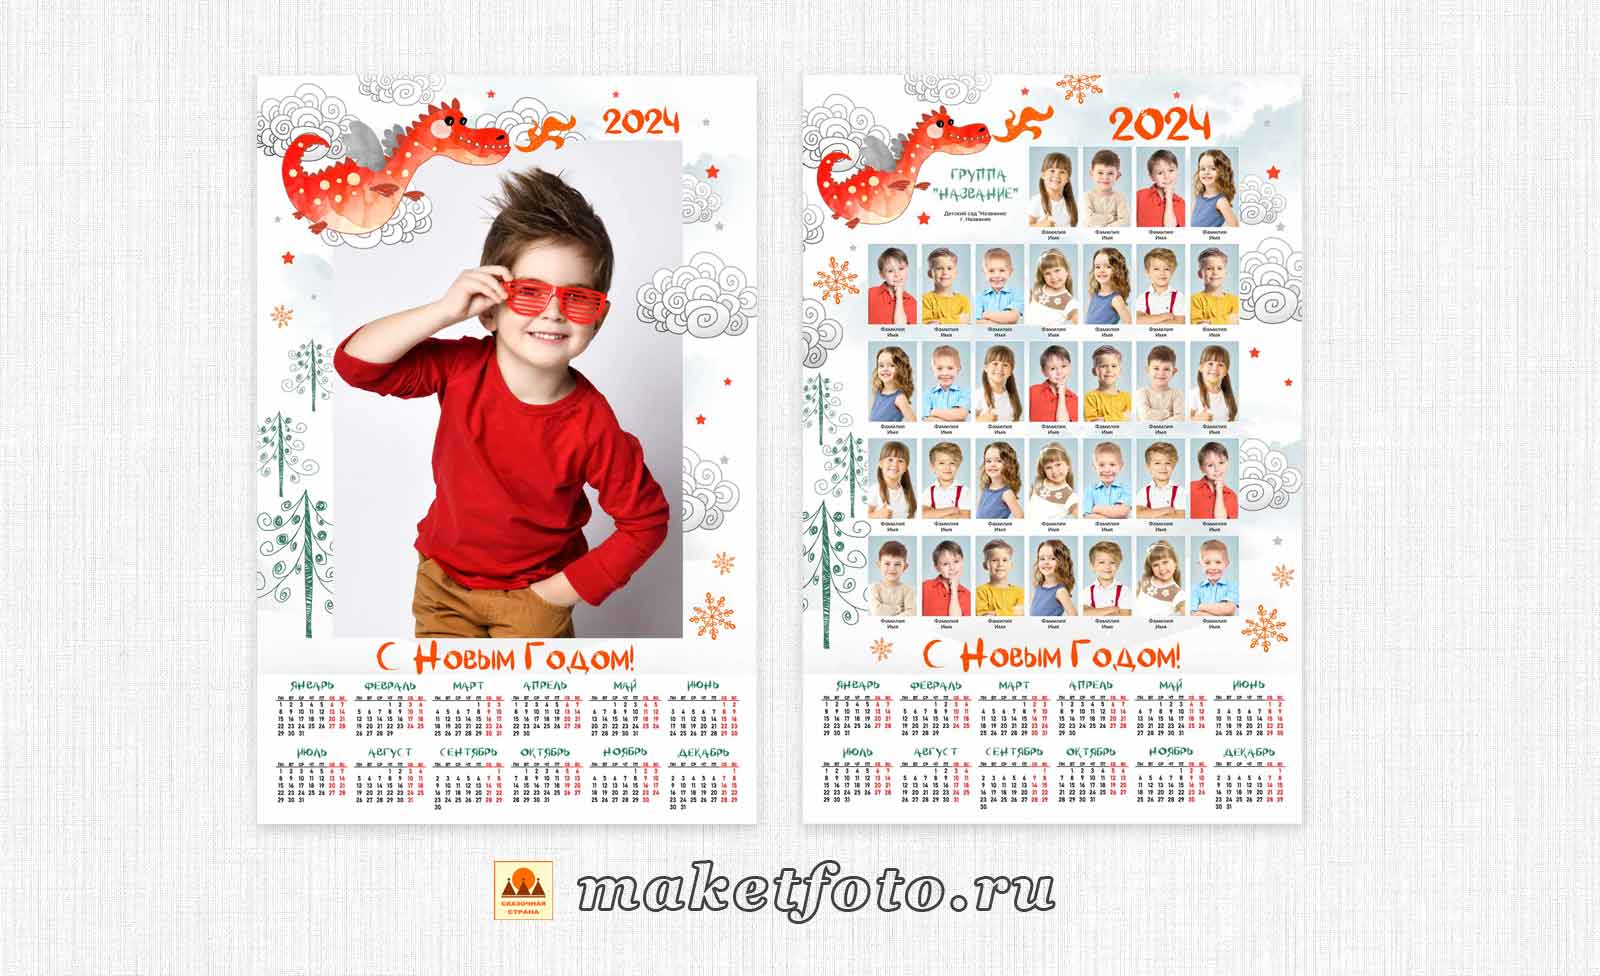 Создай календарь со своими фото онлайн с доставкой по всей России